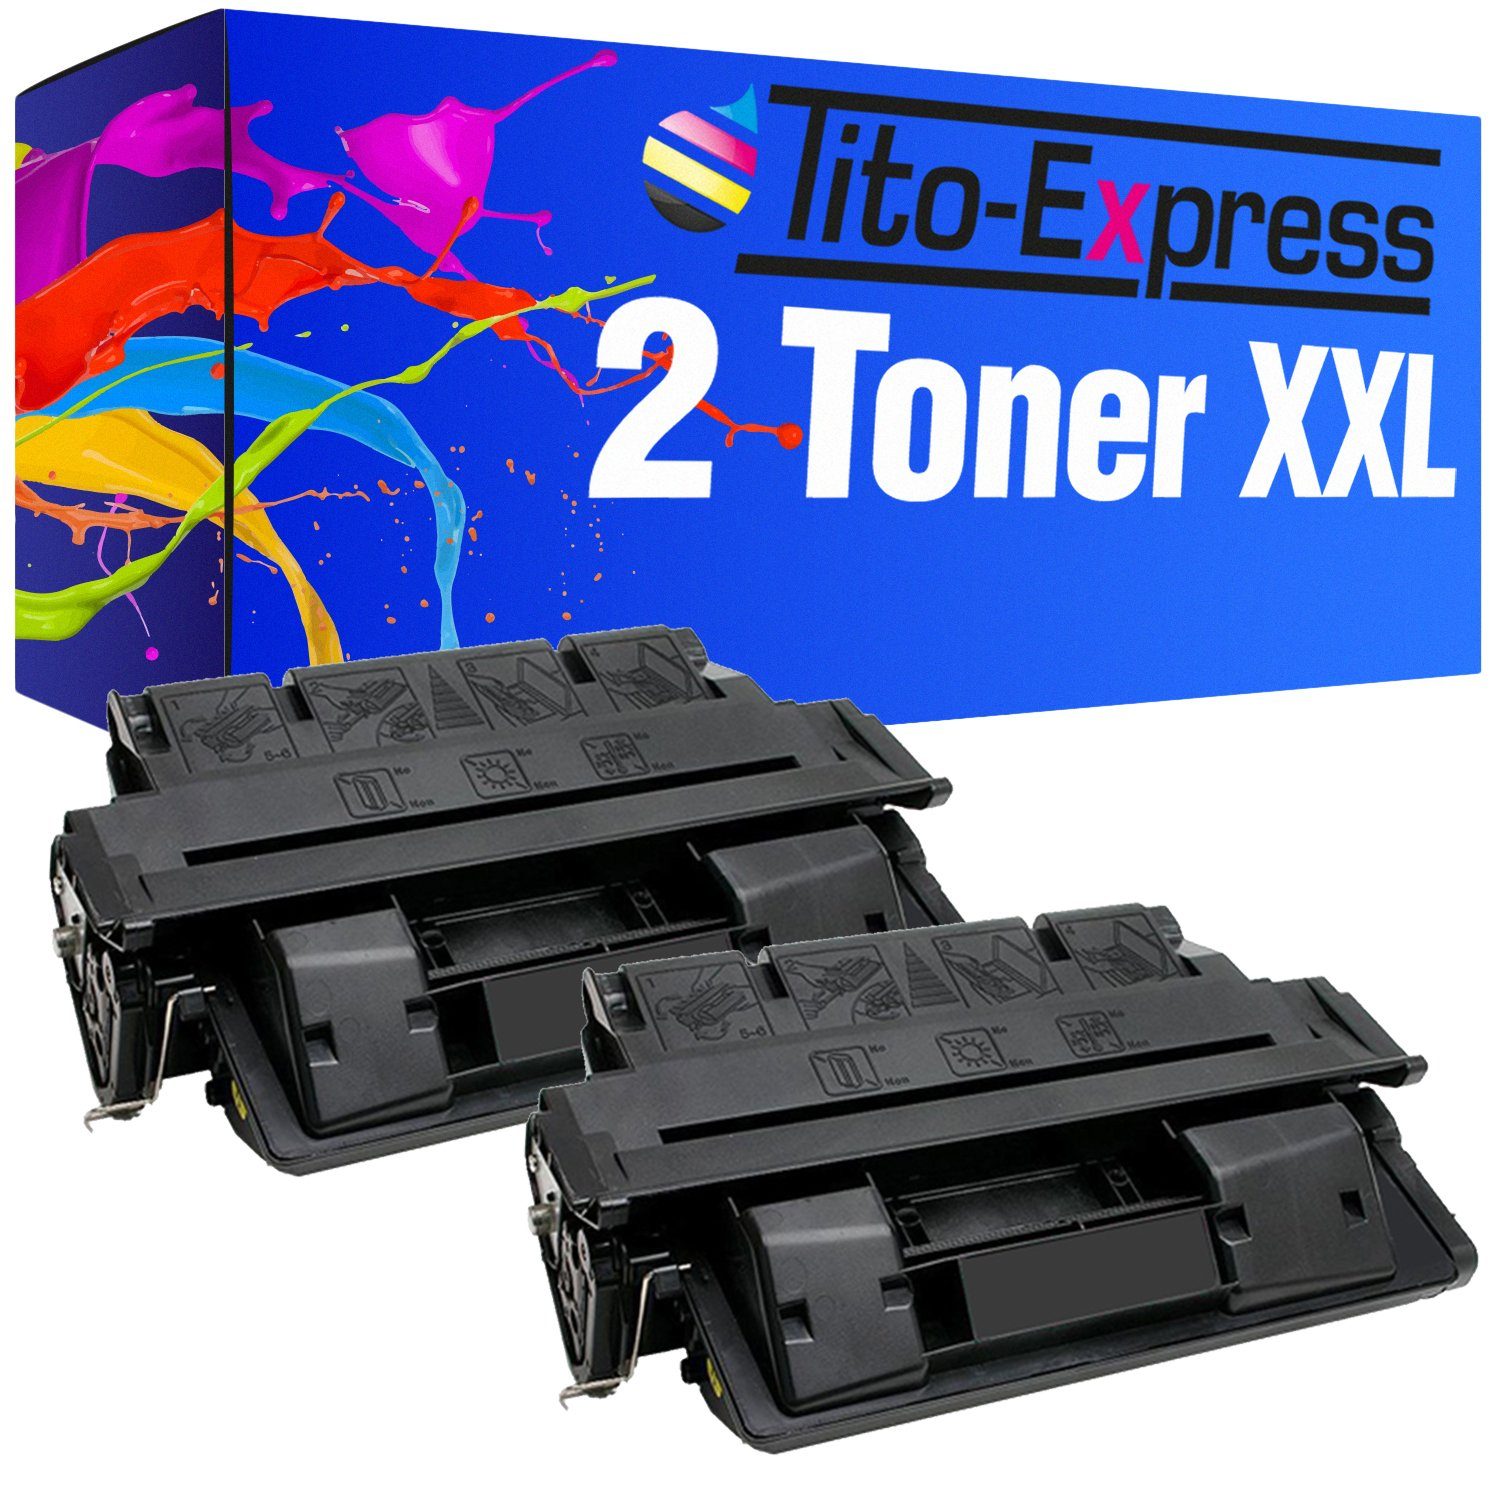 Top-Buch Tito-Express Tonerpatrone 2er EP Set Canon EP-52 ersetzt LBP-1760 für Black, i-SENSYS Canon LBP-1700 52 i-SENSYS LBP-1760e CanonEP52 i-SENSYS Series